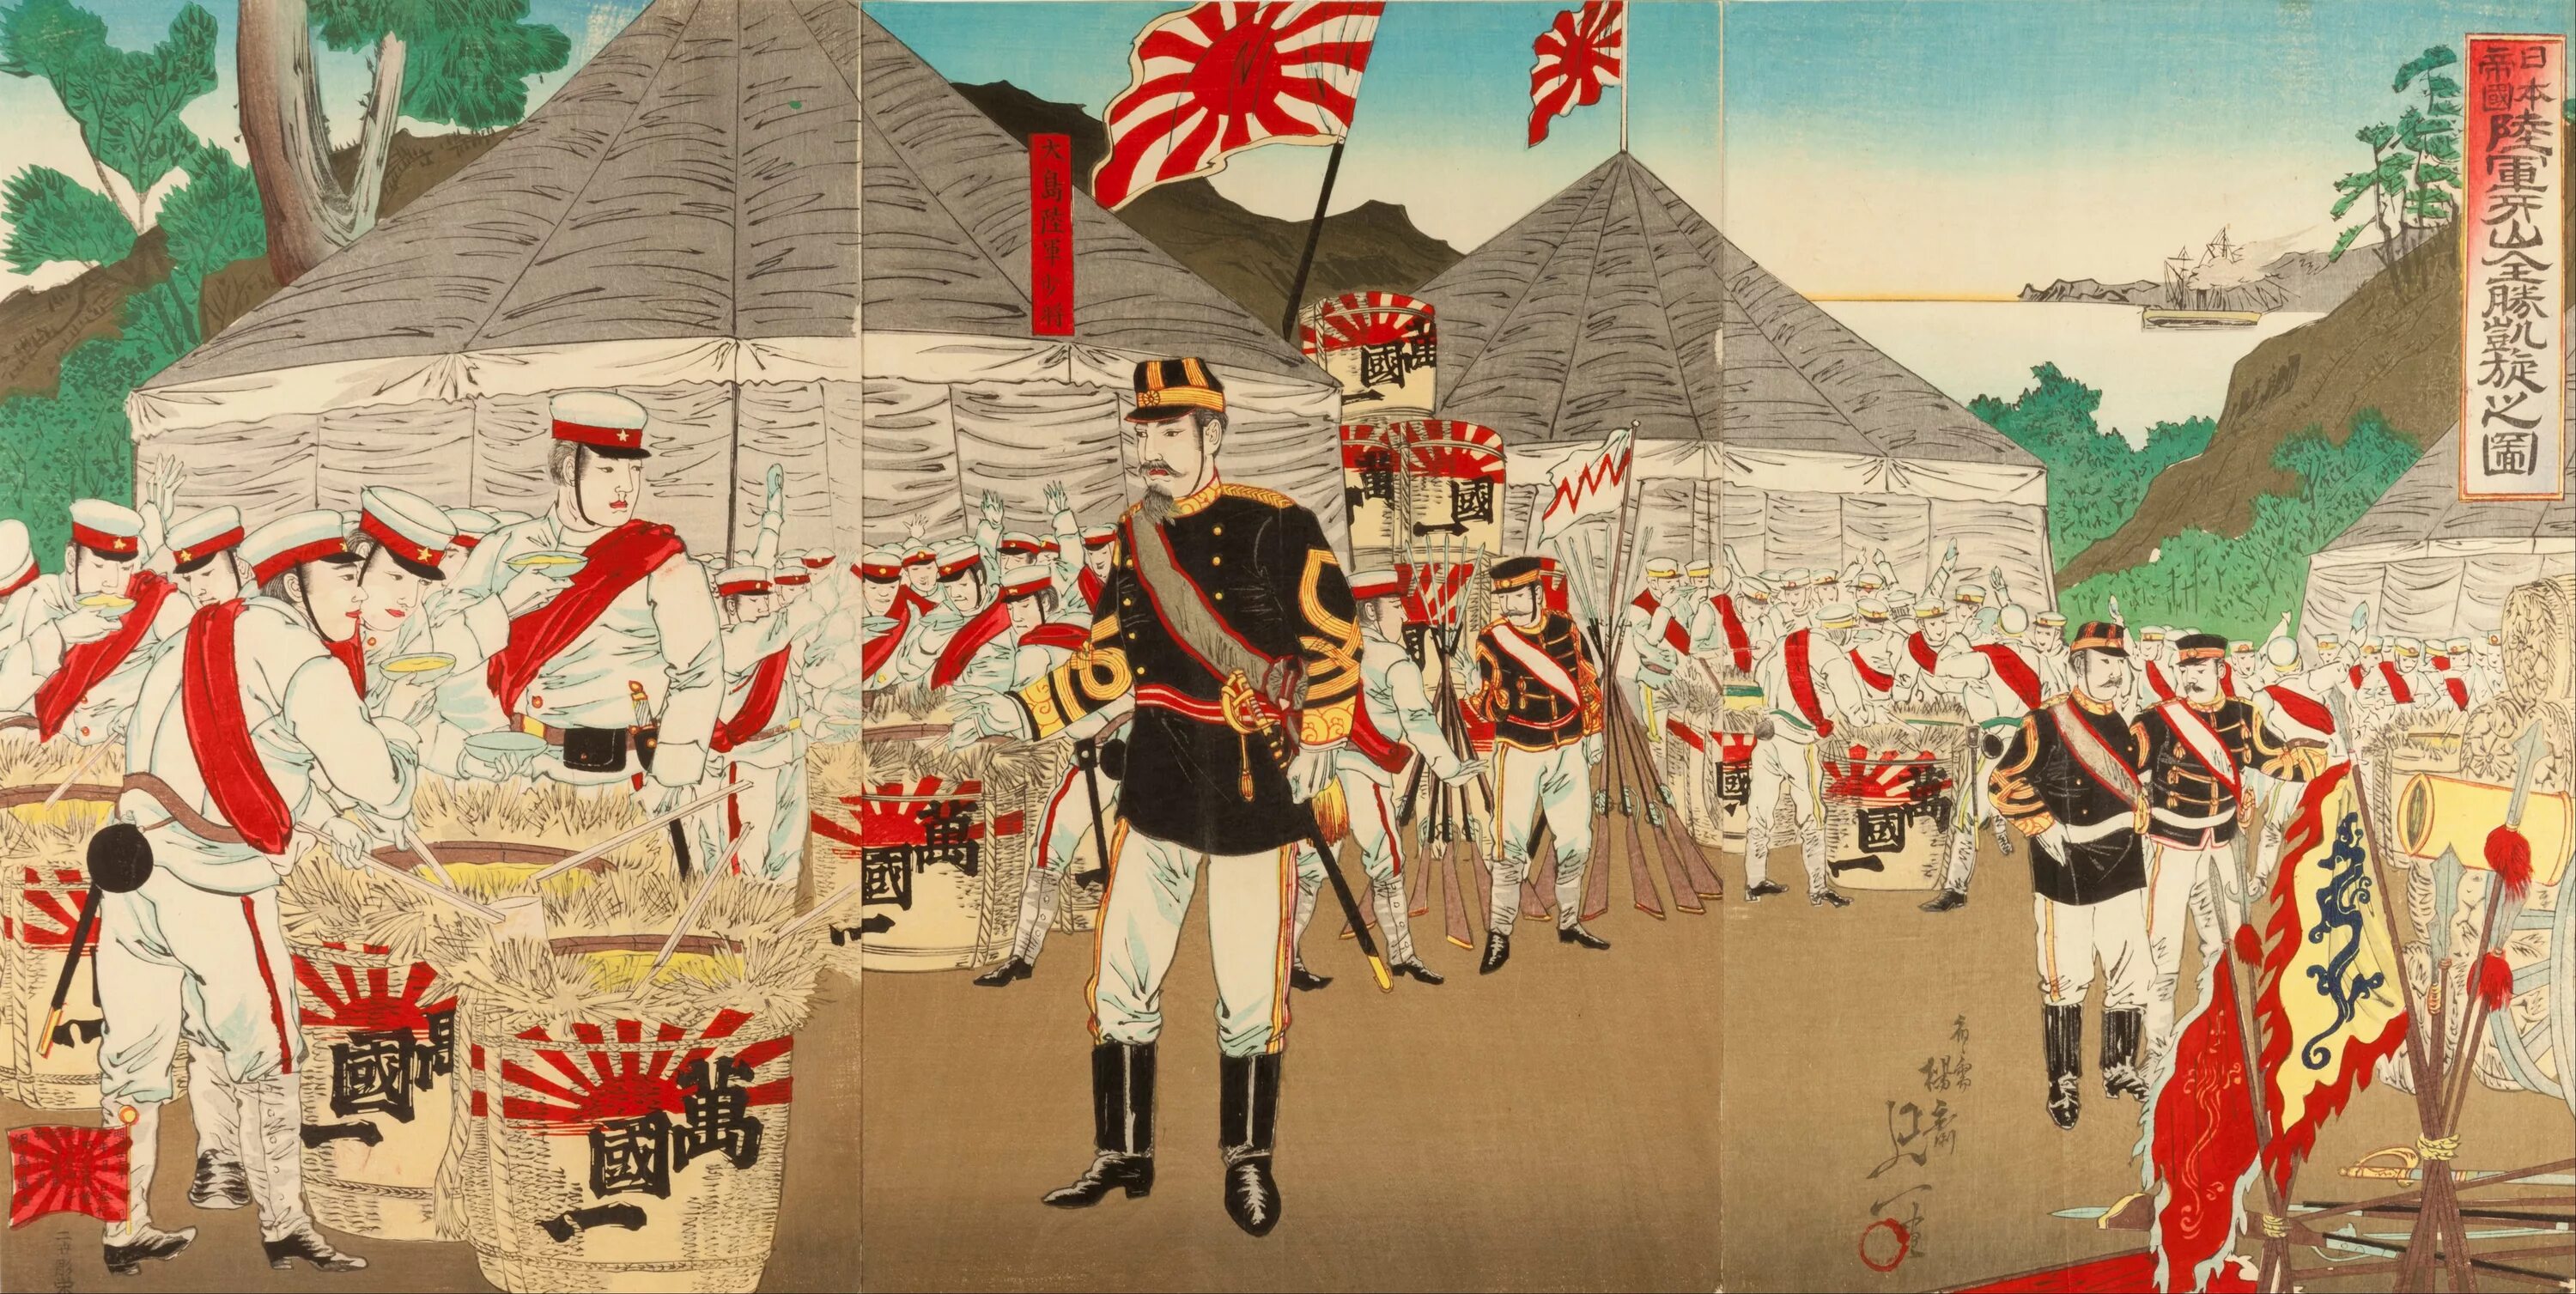 Империя обсуждение. Императорская армия Японии революция Мэйдзи. Флаг императорской армии Японии. Флаг японской империи в эпоху Мэйдзи. Японский флаг Мэйдзи.